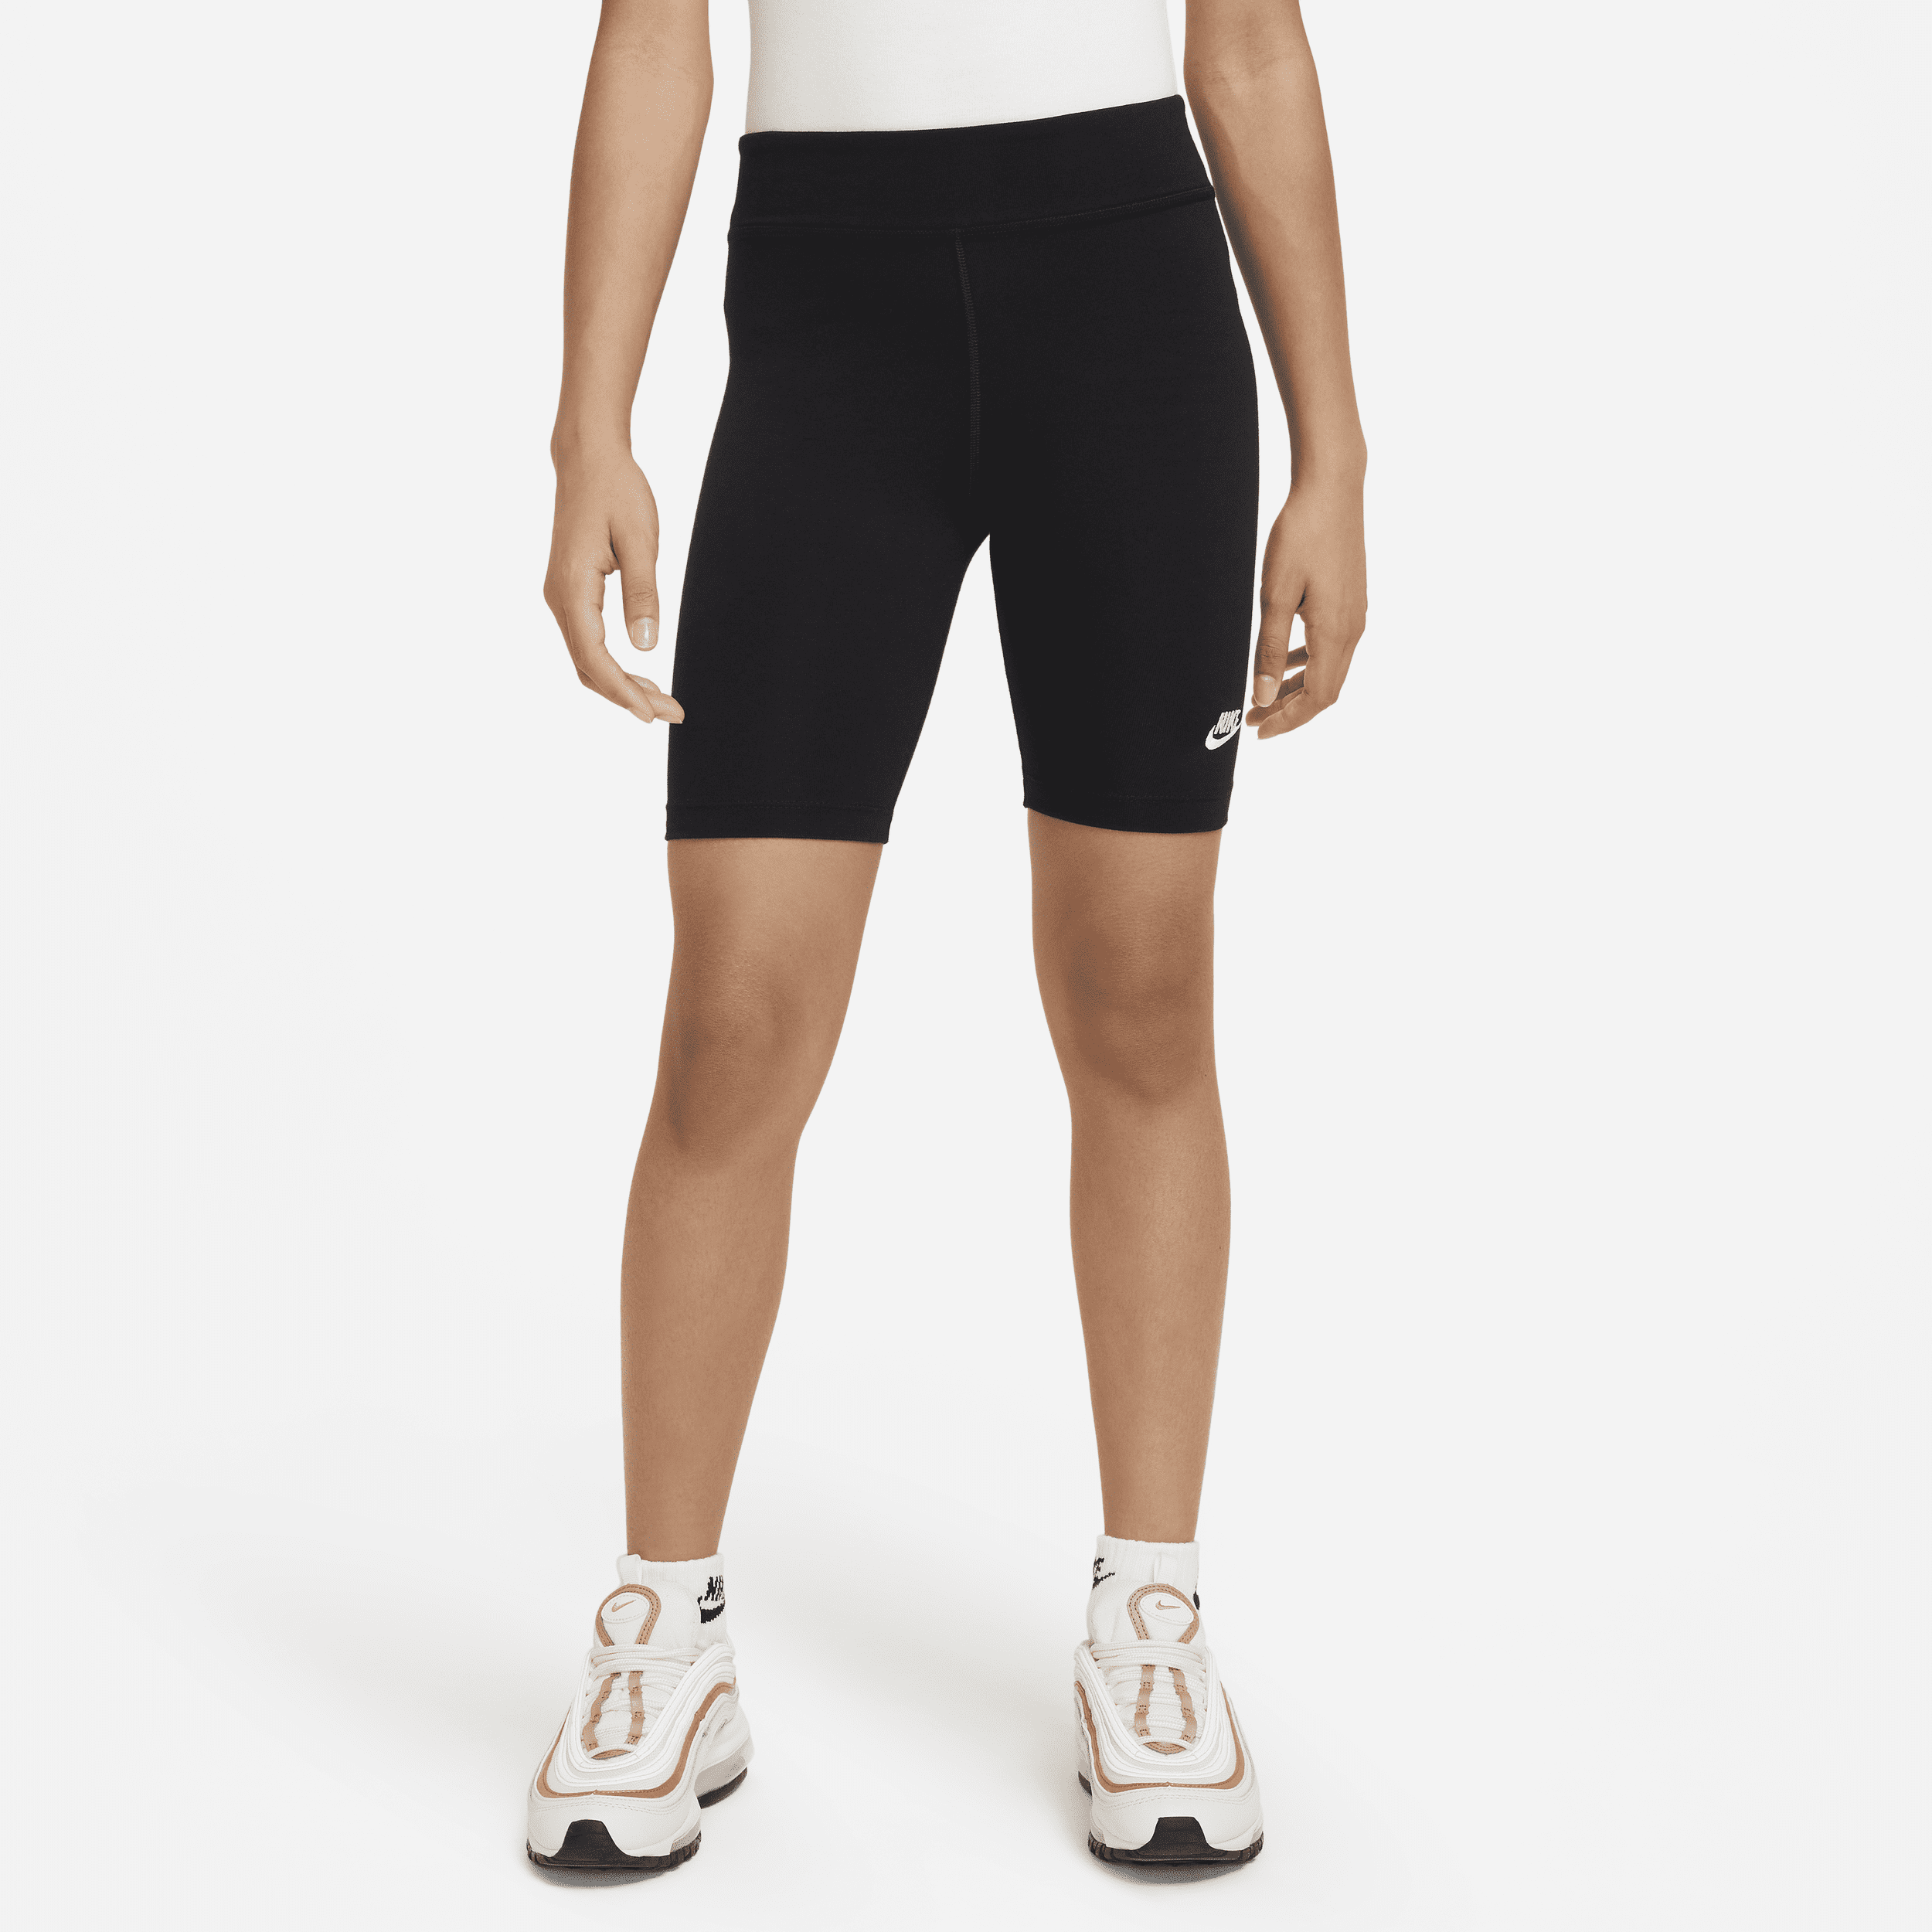 Shorts modello ciclista 18 cm Nike – Ragazza - Nero